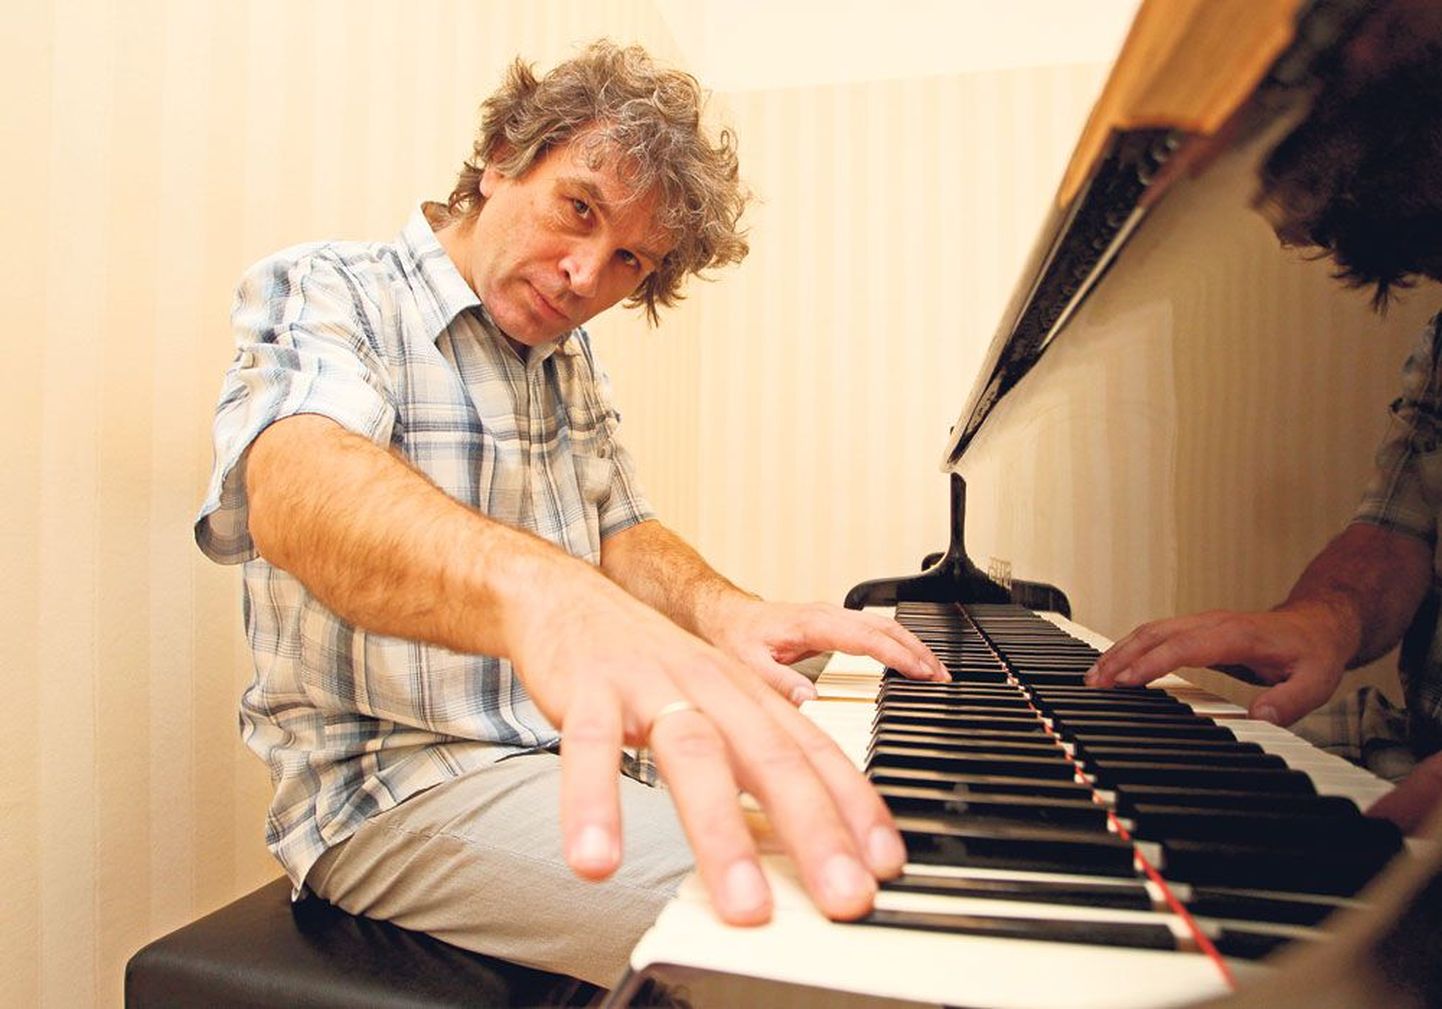 Rahvusvahelise mainega klaverikunstnik ja muusikapedagoog Tanel Joamets (46) annab igal aastal 40–50 soolokontserti paljudes kohtades Eestis ja Venemaal, kuid ka muudes riikides, näiteks Soomes ja Itaalias. Pilt on tehtud eile Elleri koolis.